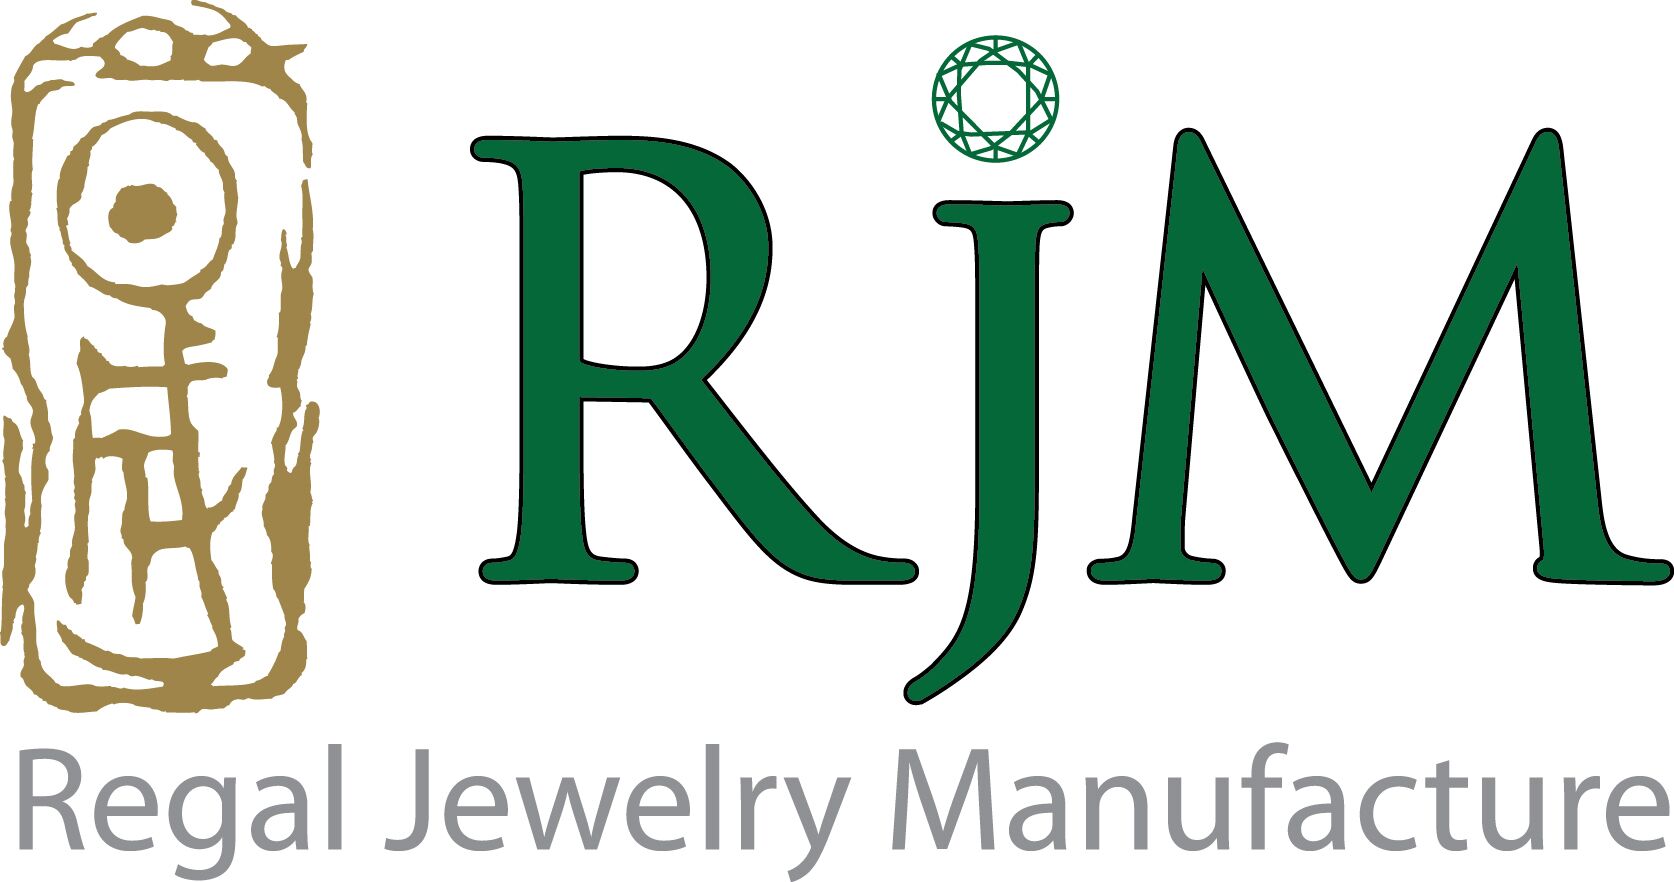 Regal Jewelry Manufacture Co., Ltd.